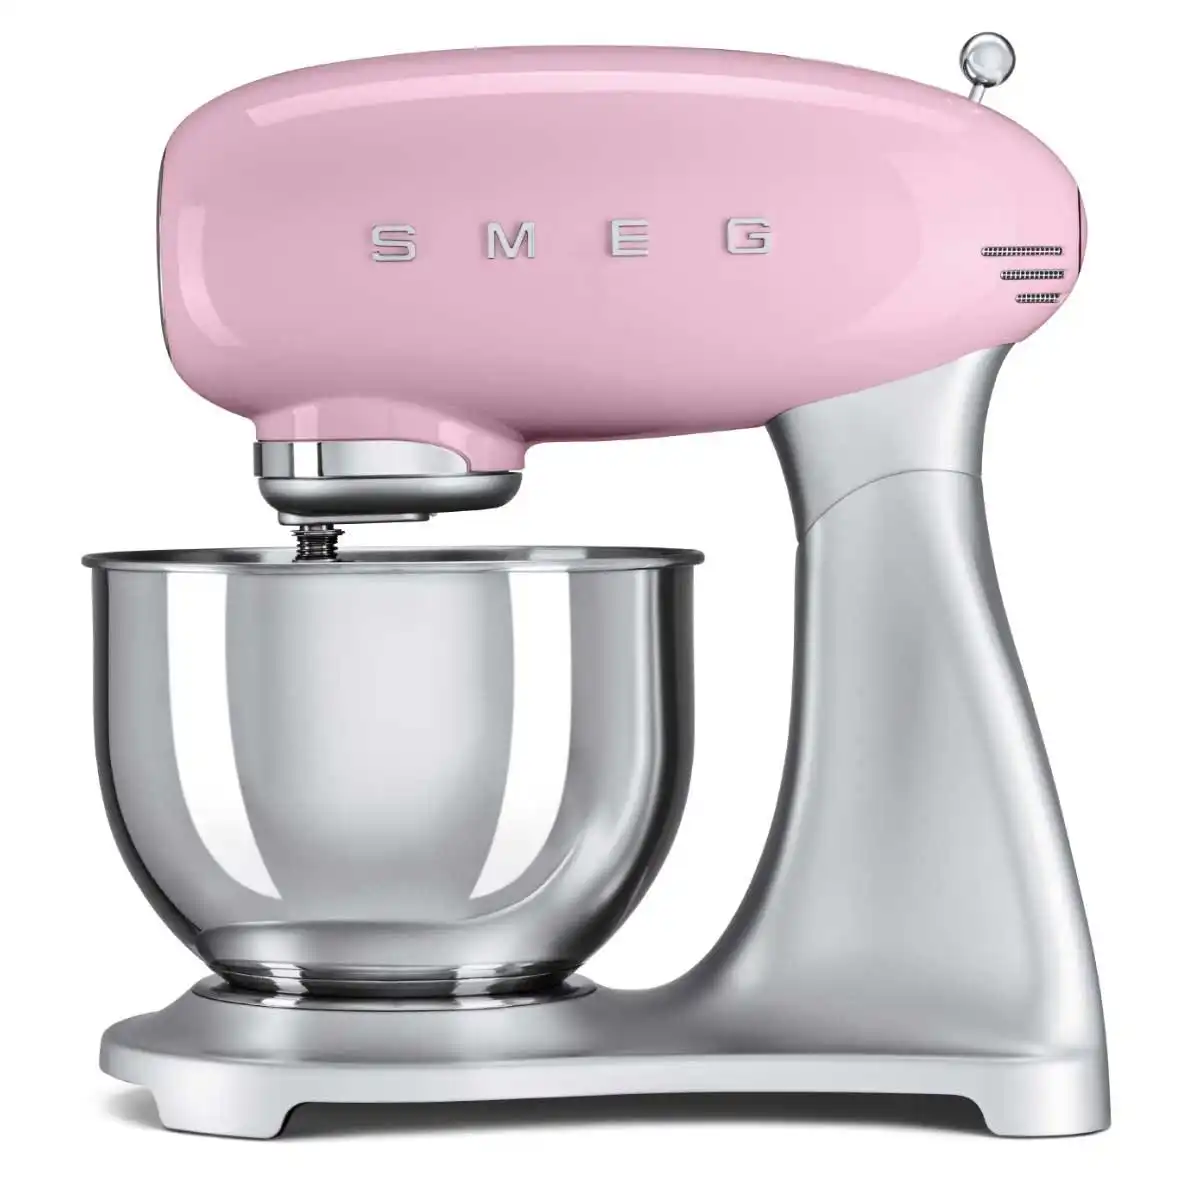 SMEG Pink 50s Retro Style Stand Mixer